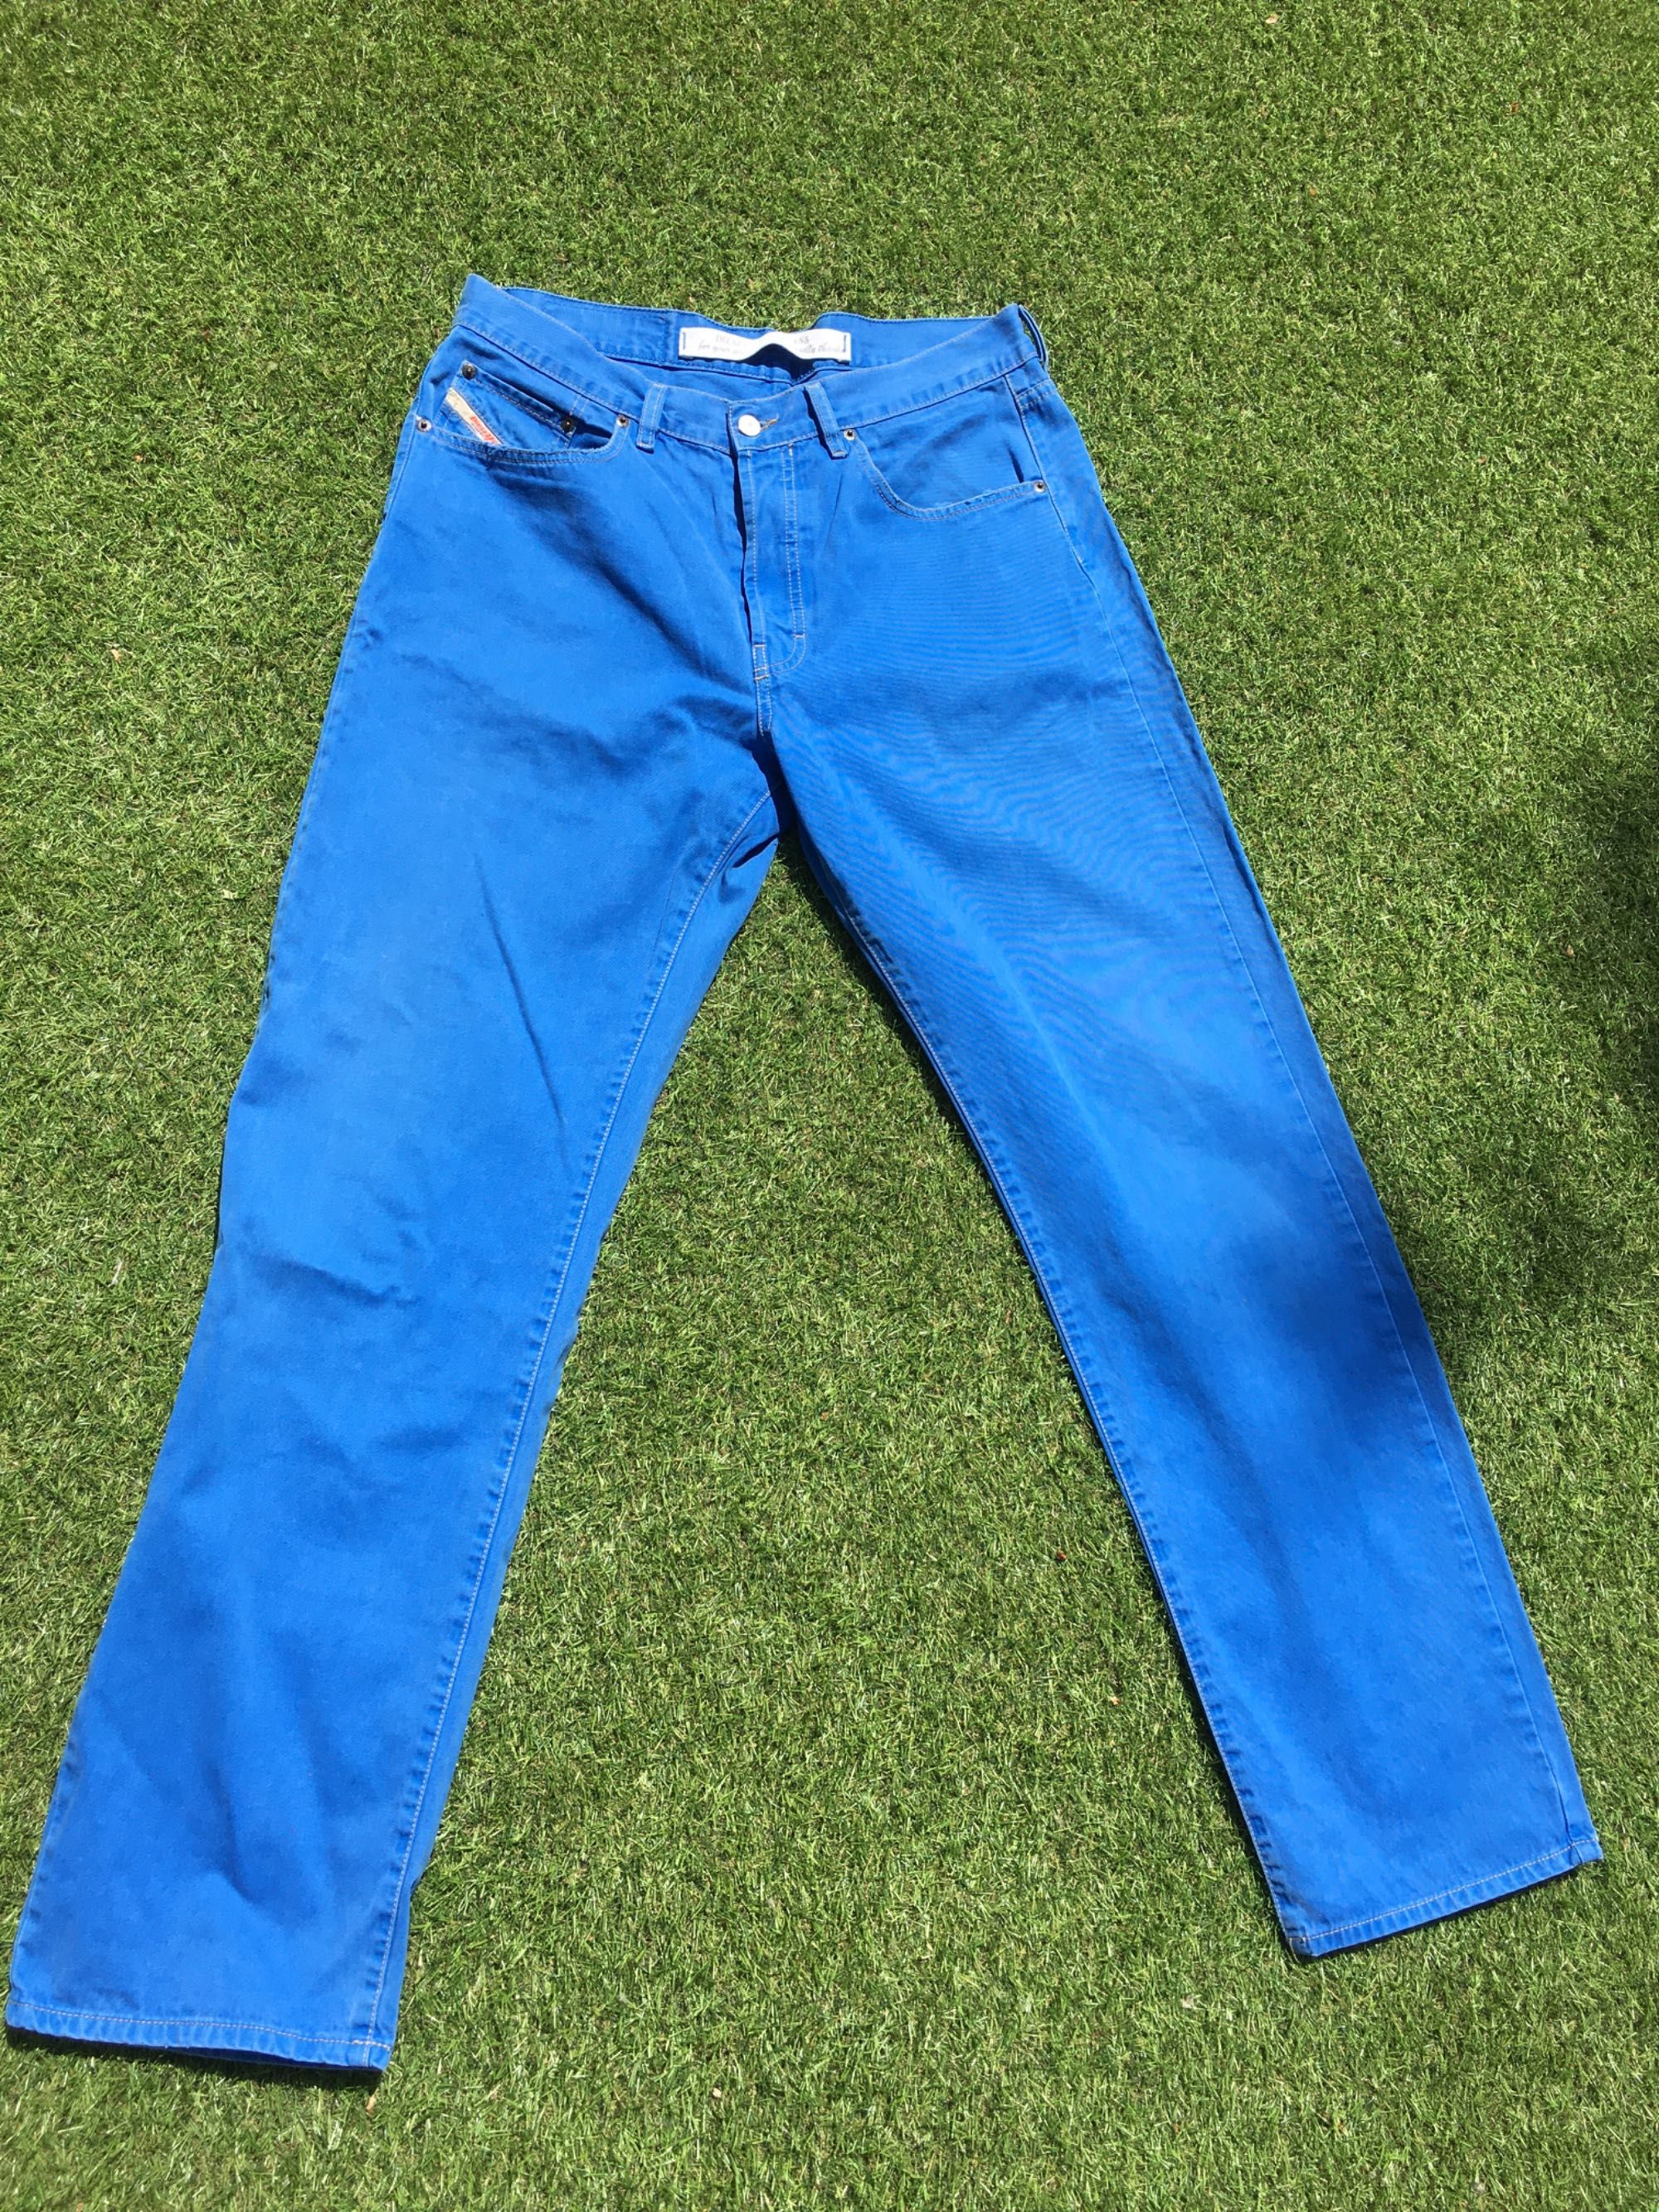 Diesel spodnie męskie bawełna niebieskie rozm. 36